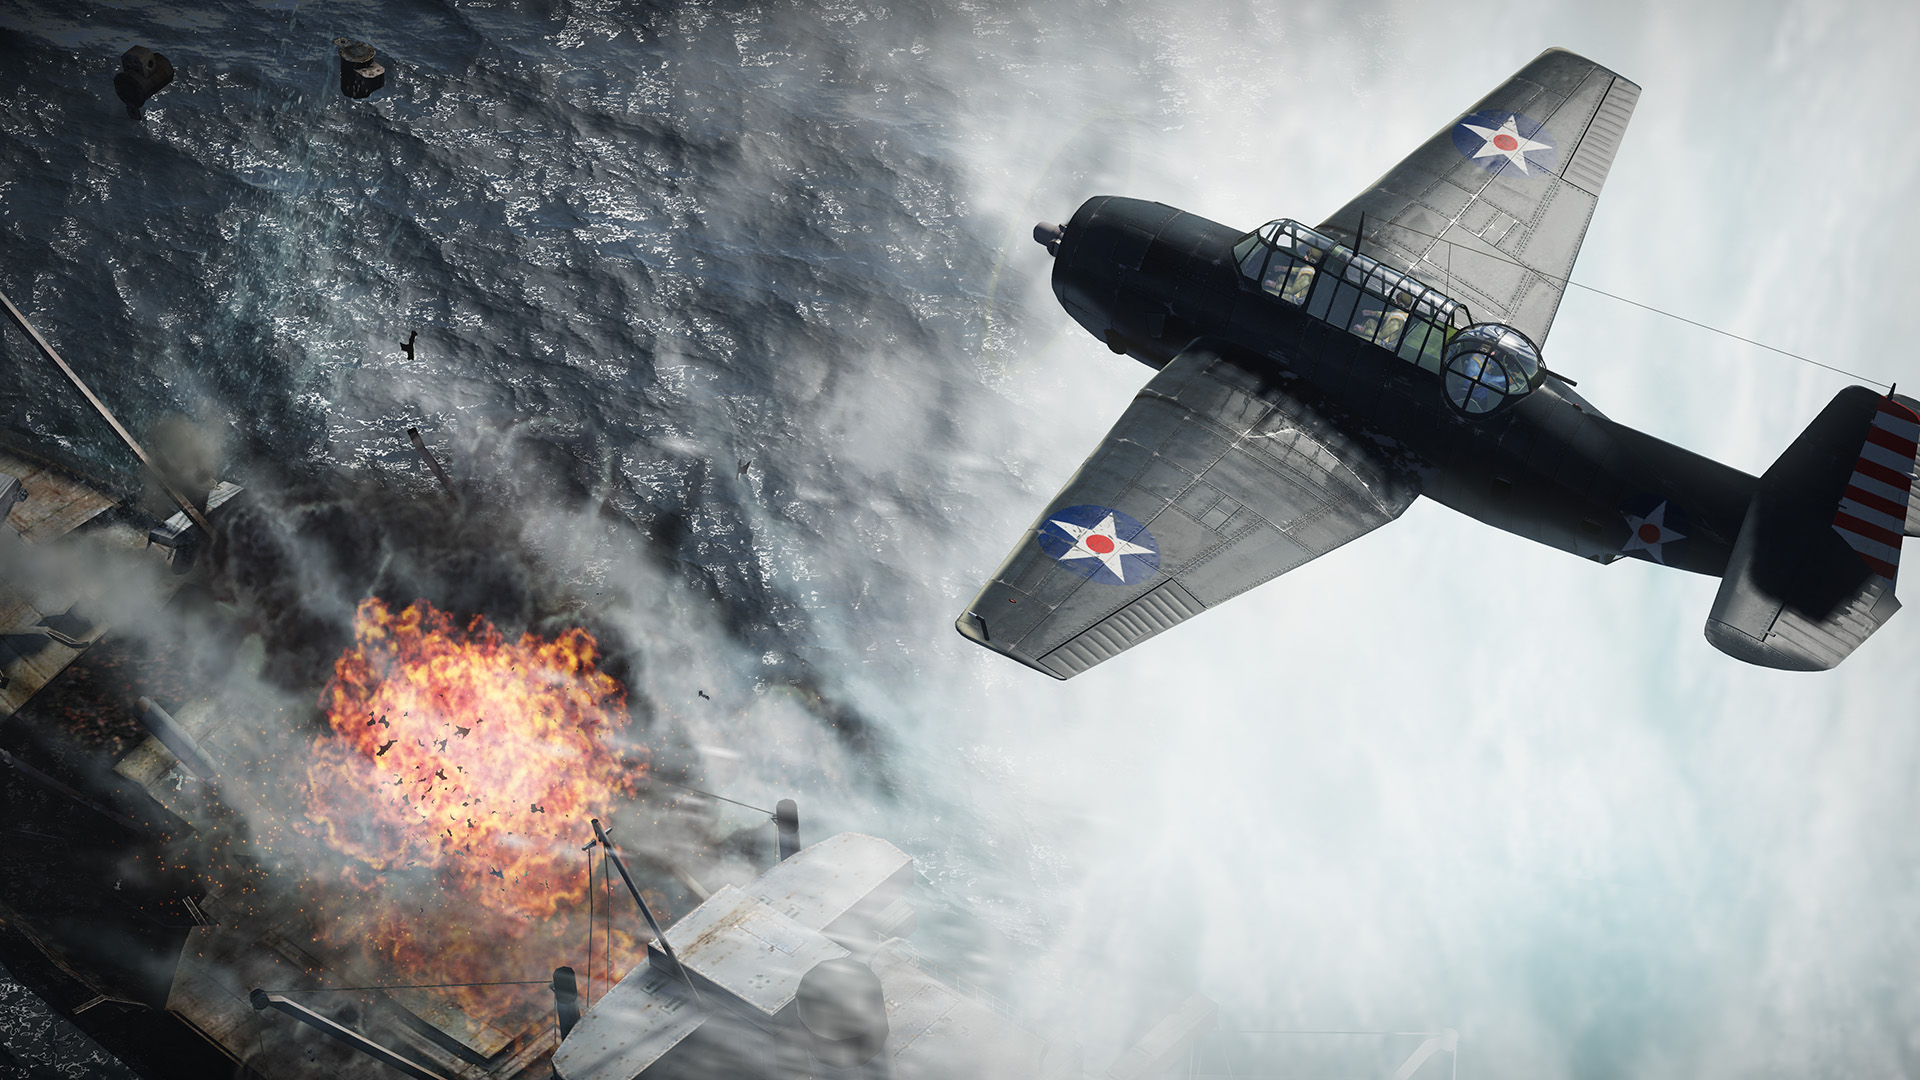 war thunder wallpaper,airplane,aircraft,vehicle,rocket powered aircraft,military aircraft